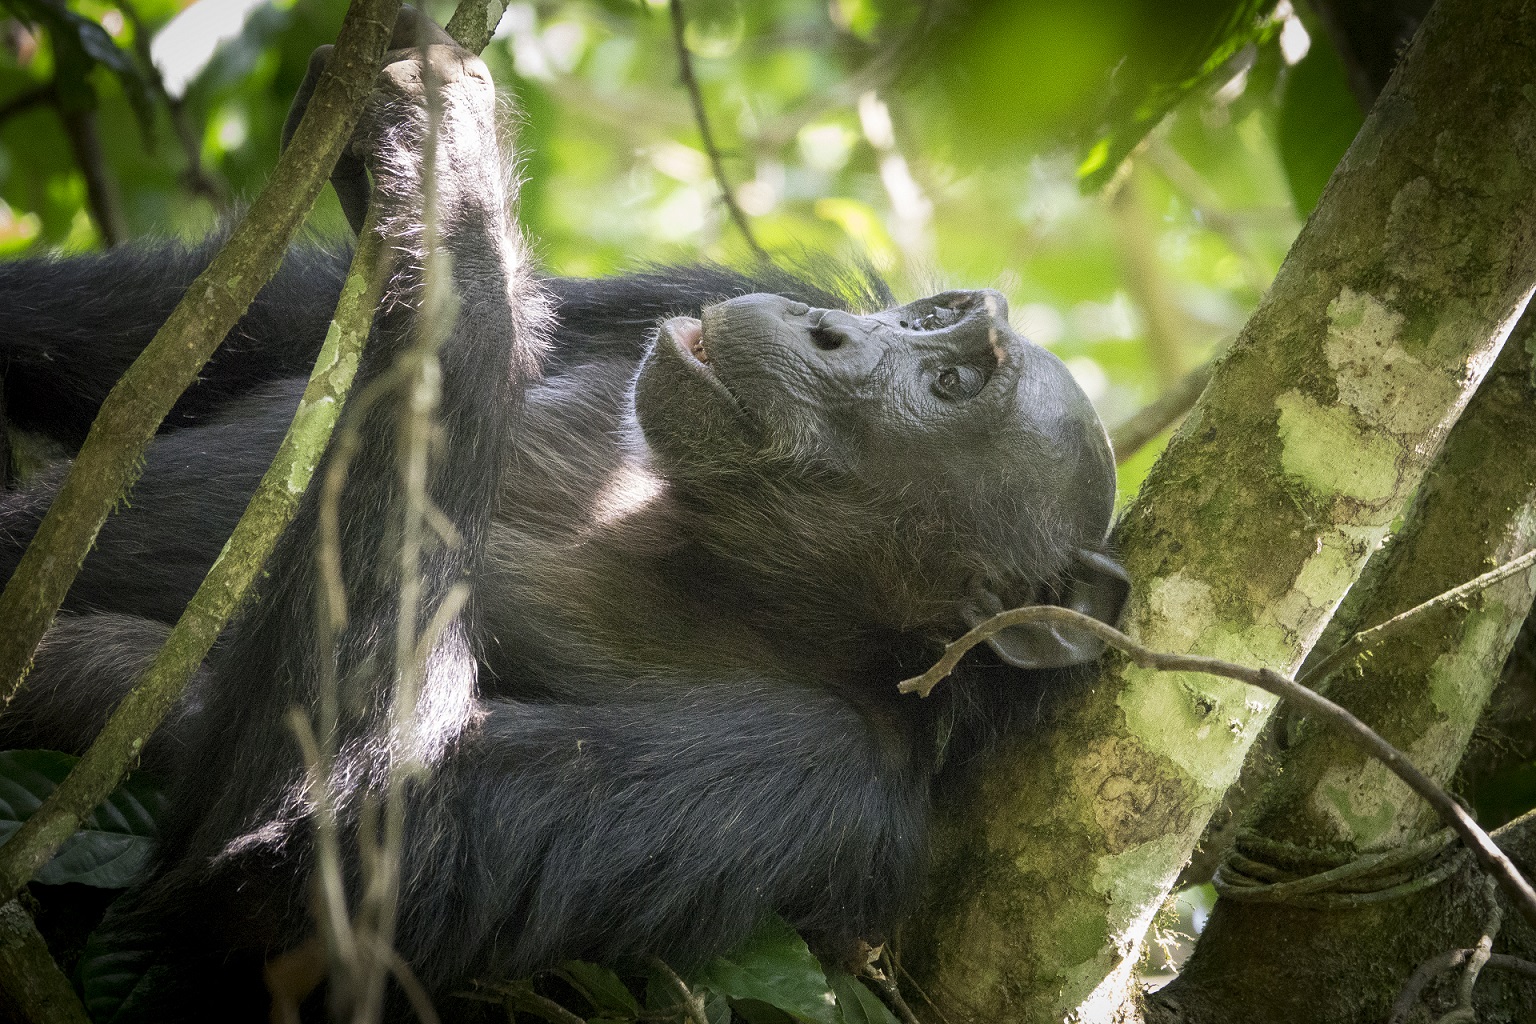 Chimpanzee in Budongo forest Uganda

IMAGE: JP 2017